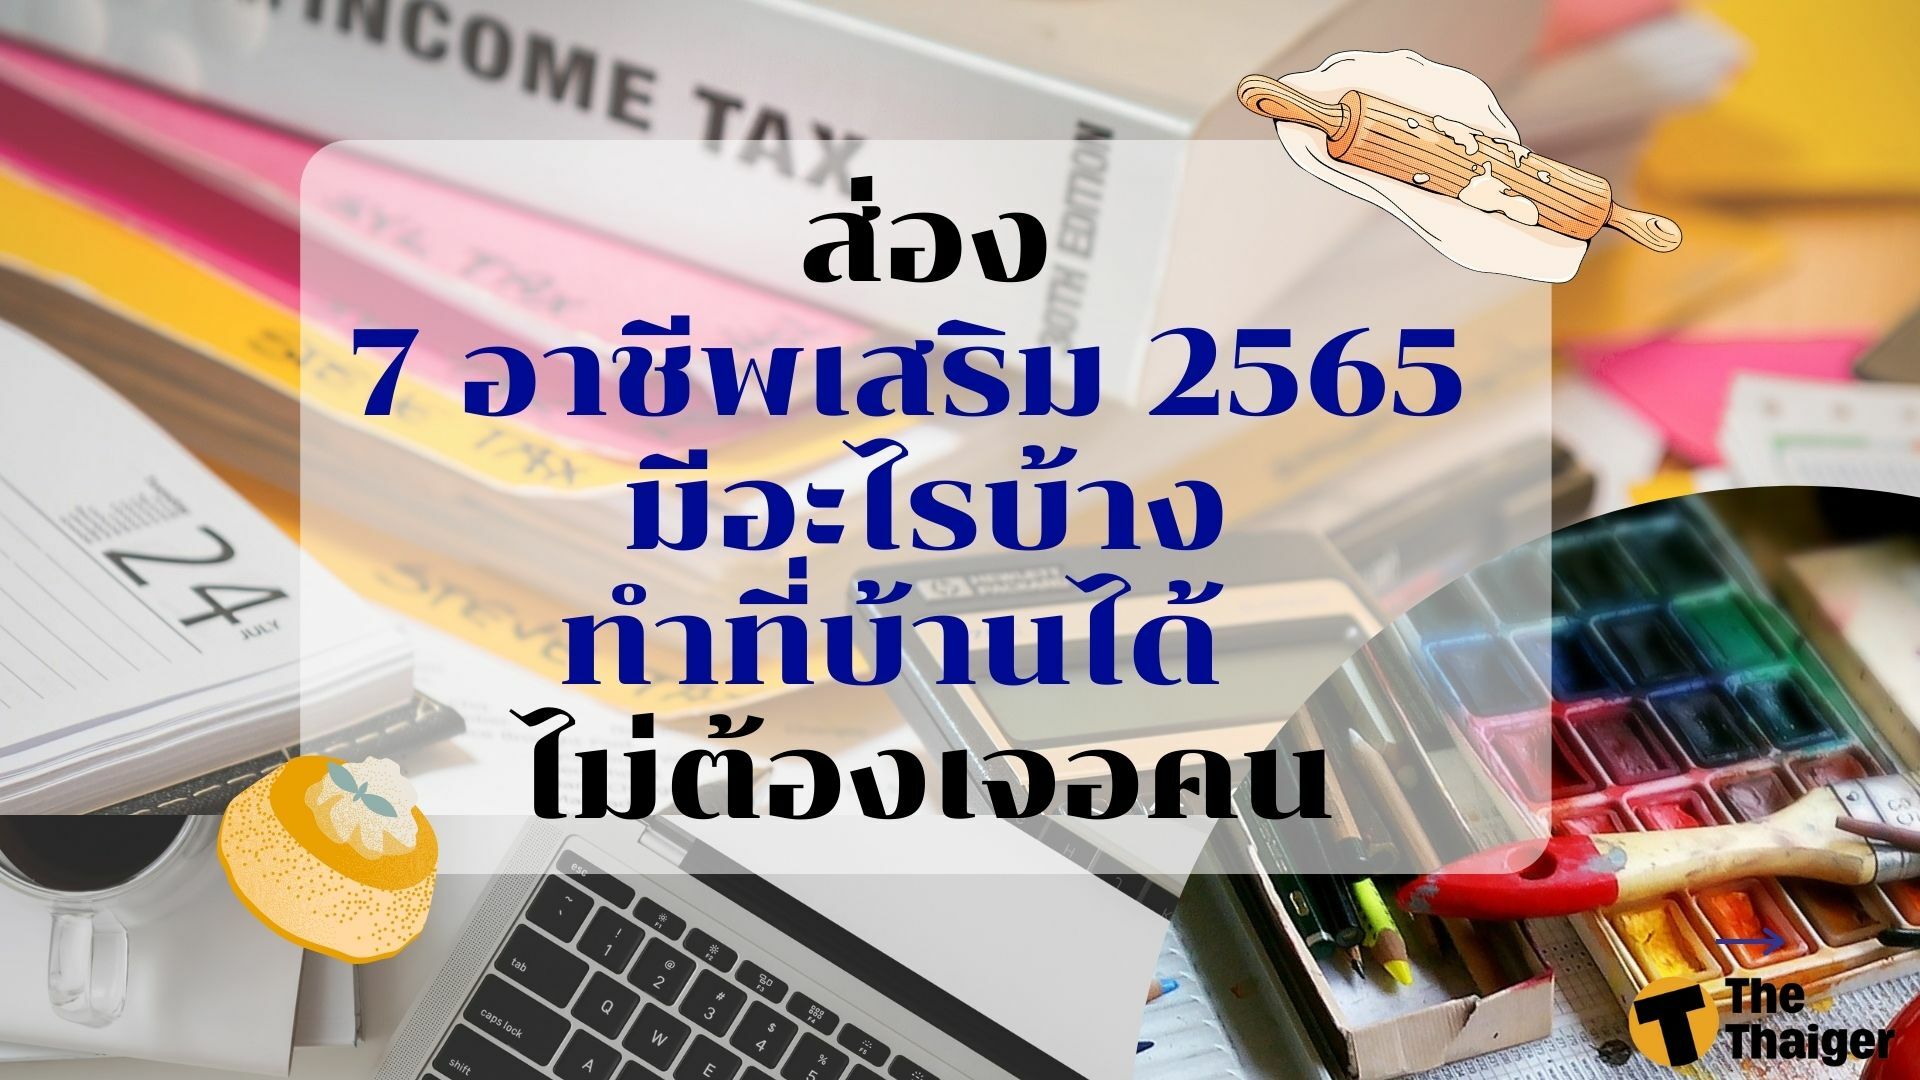 7 อาชีพเสริม 2565 ทำที่บ้านได้ มีอะไรบ้าง ไม่ต้องเจอคน | Thaiger ข่าวไทย